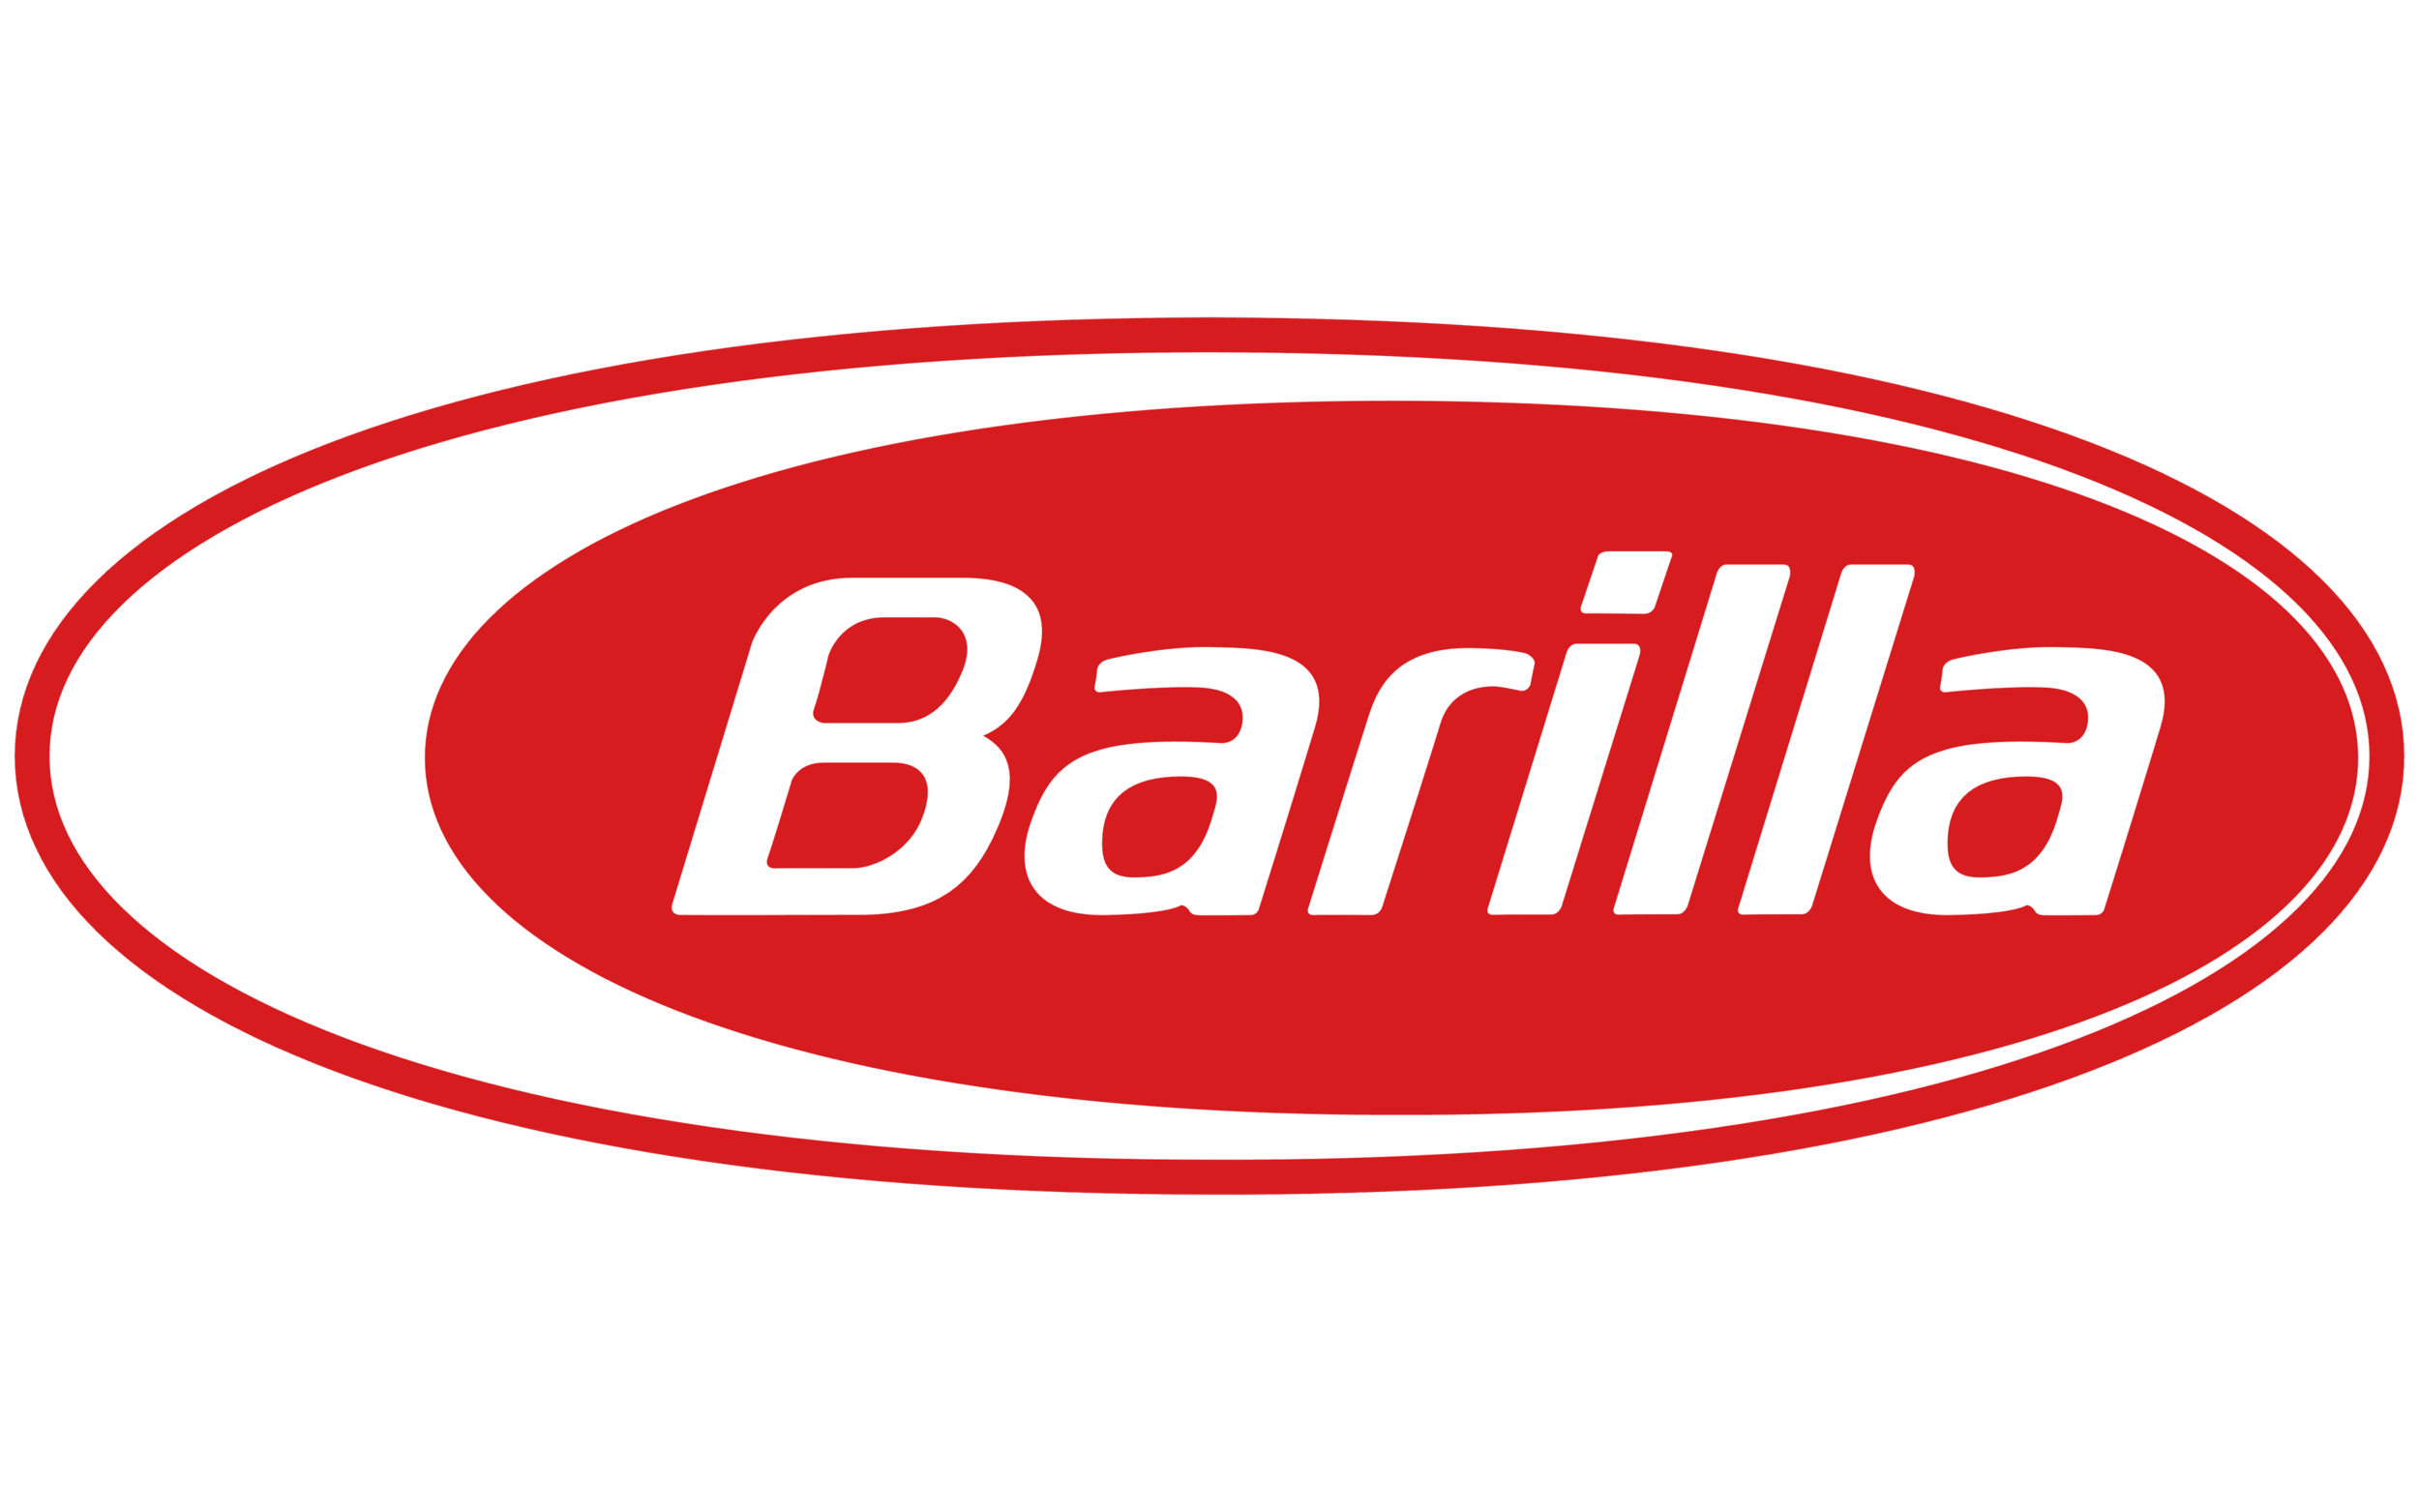 Barilla.png